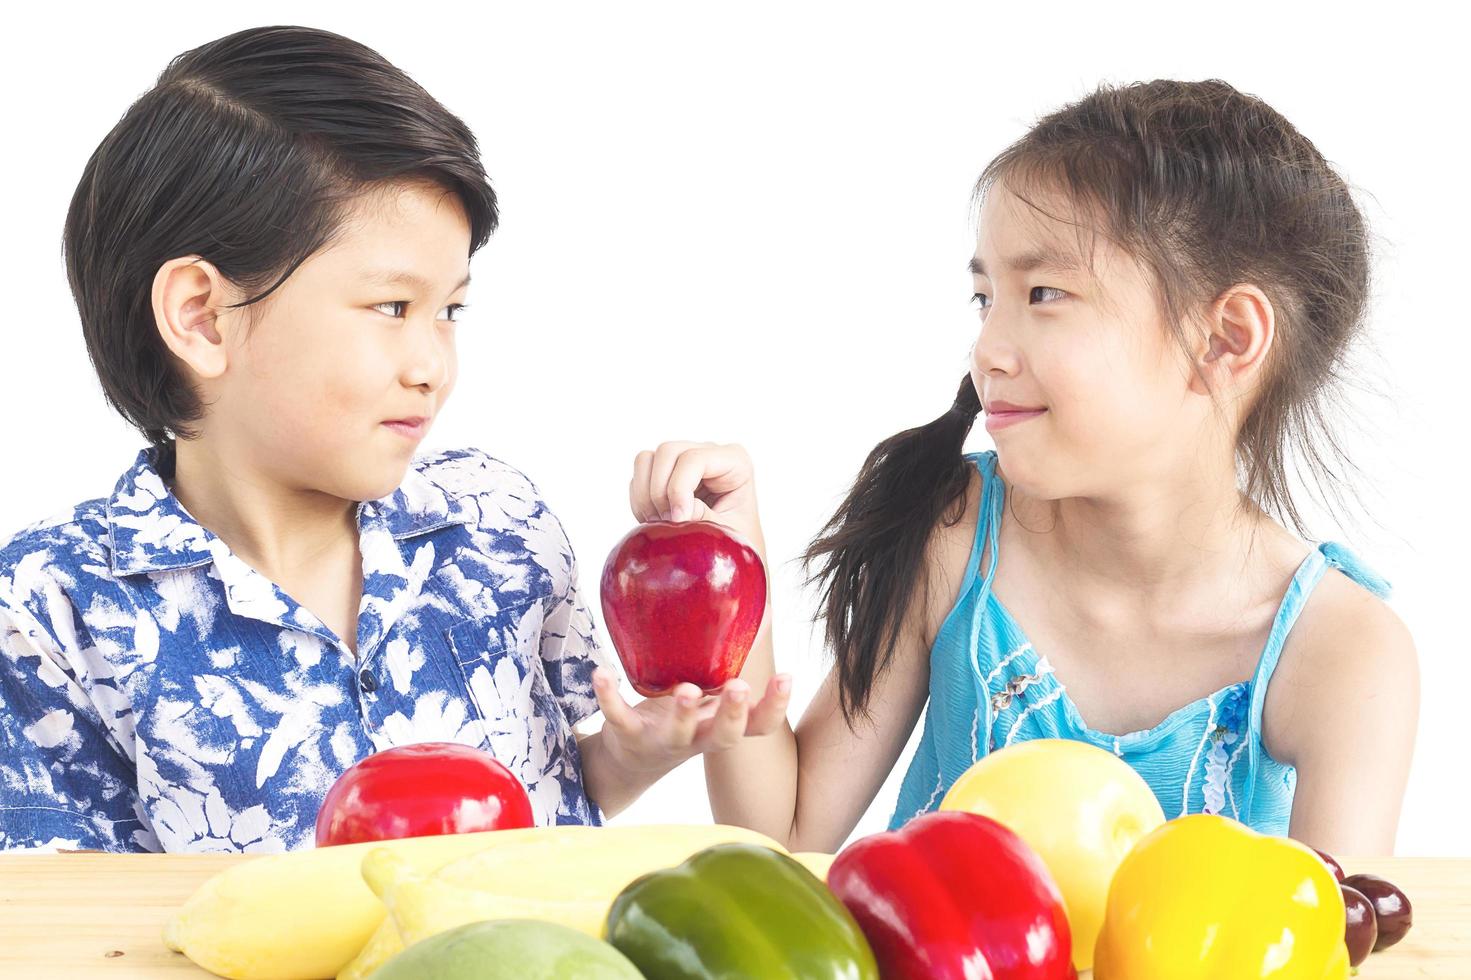 ragazzo e ragazza asiatici che mostrano godere dell'espressione con verdure fresche colorate isolate su sfondo bianco foto